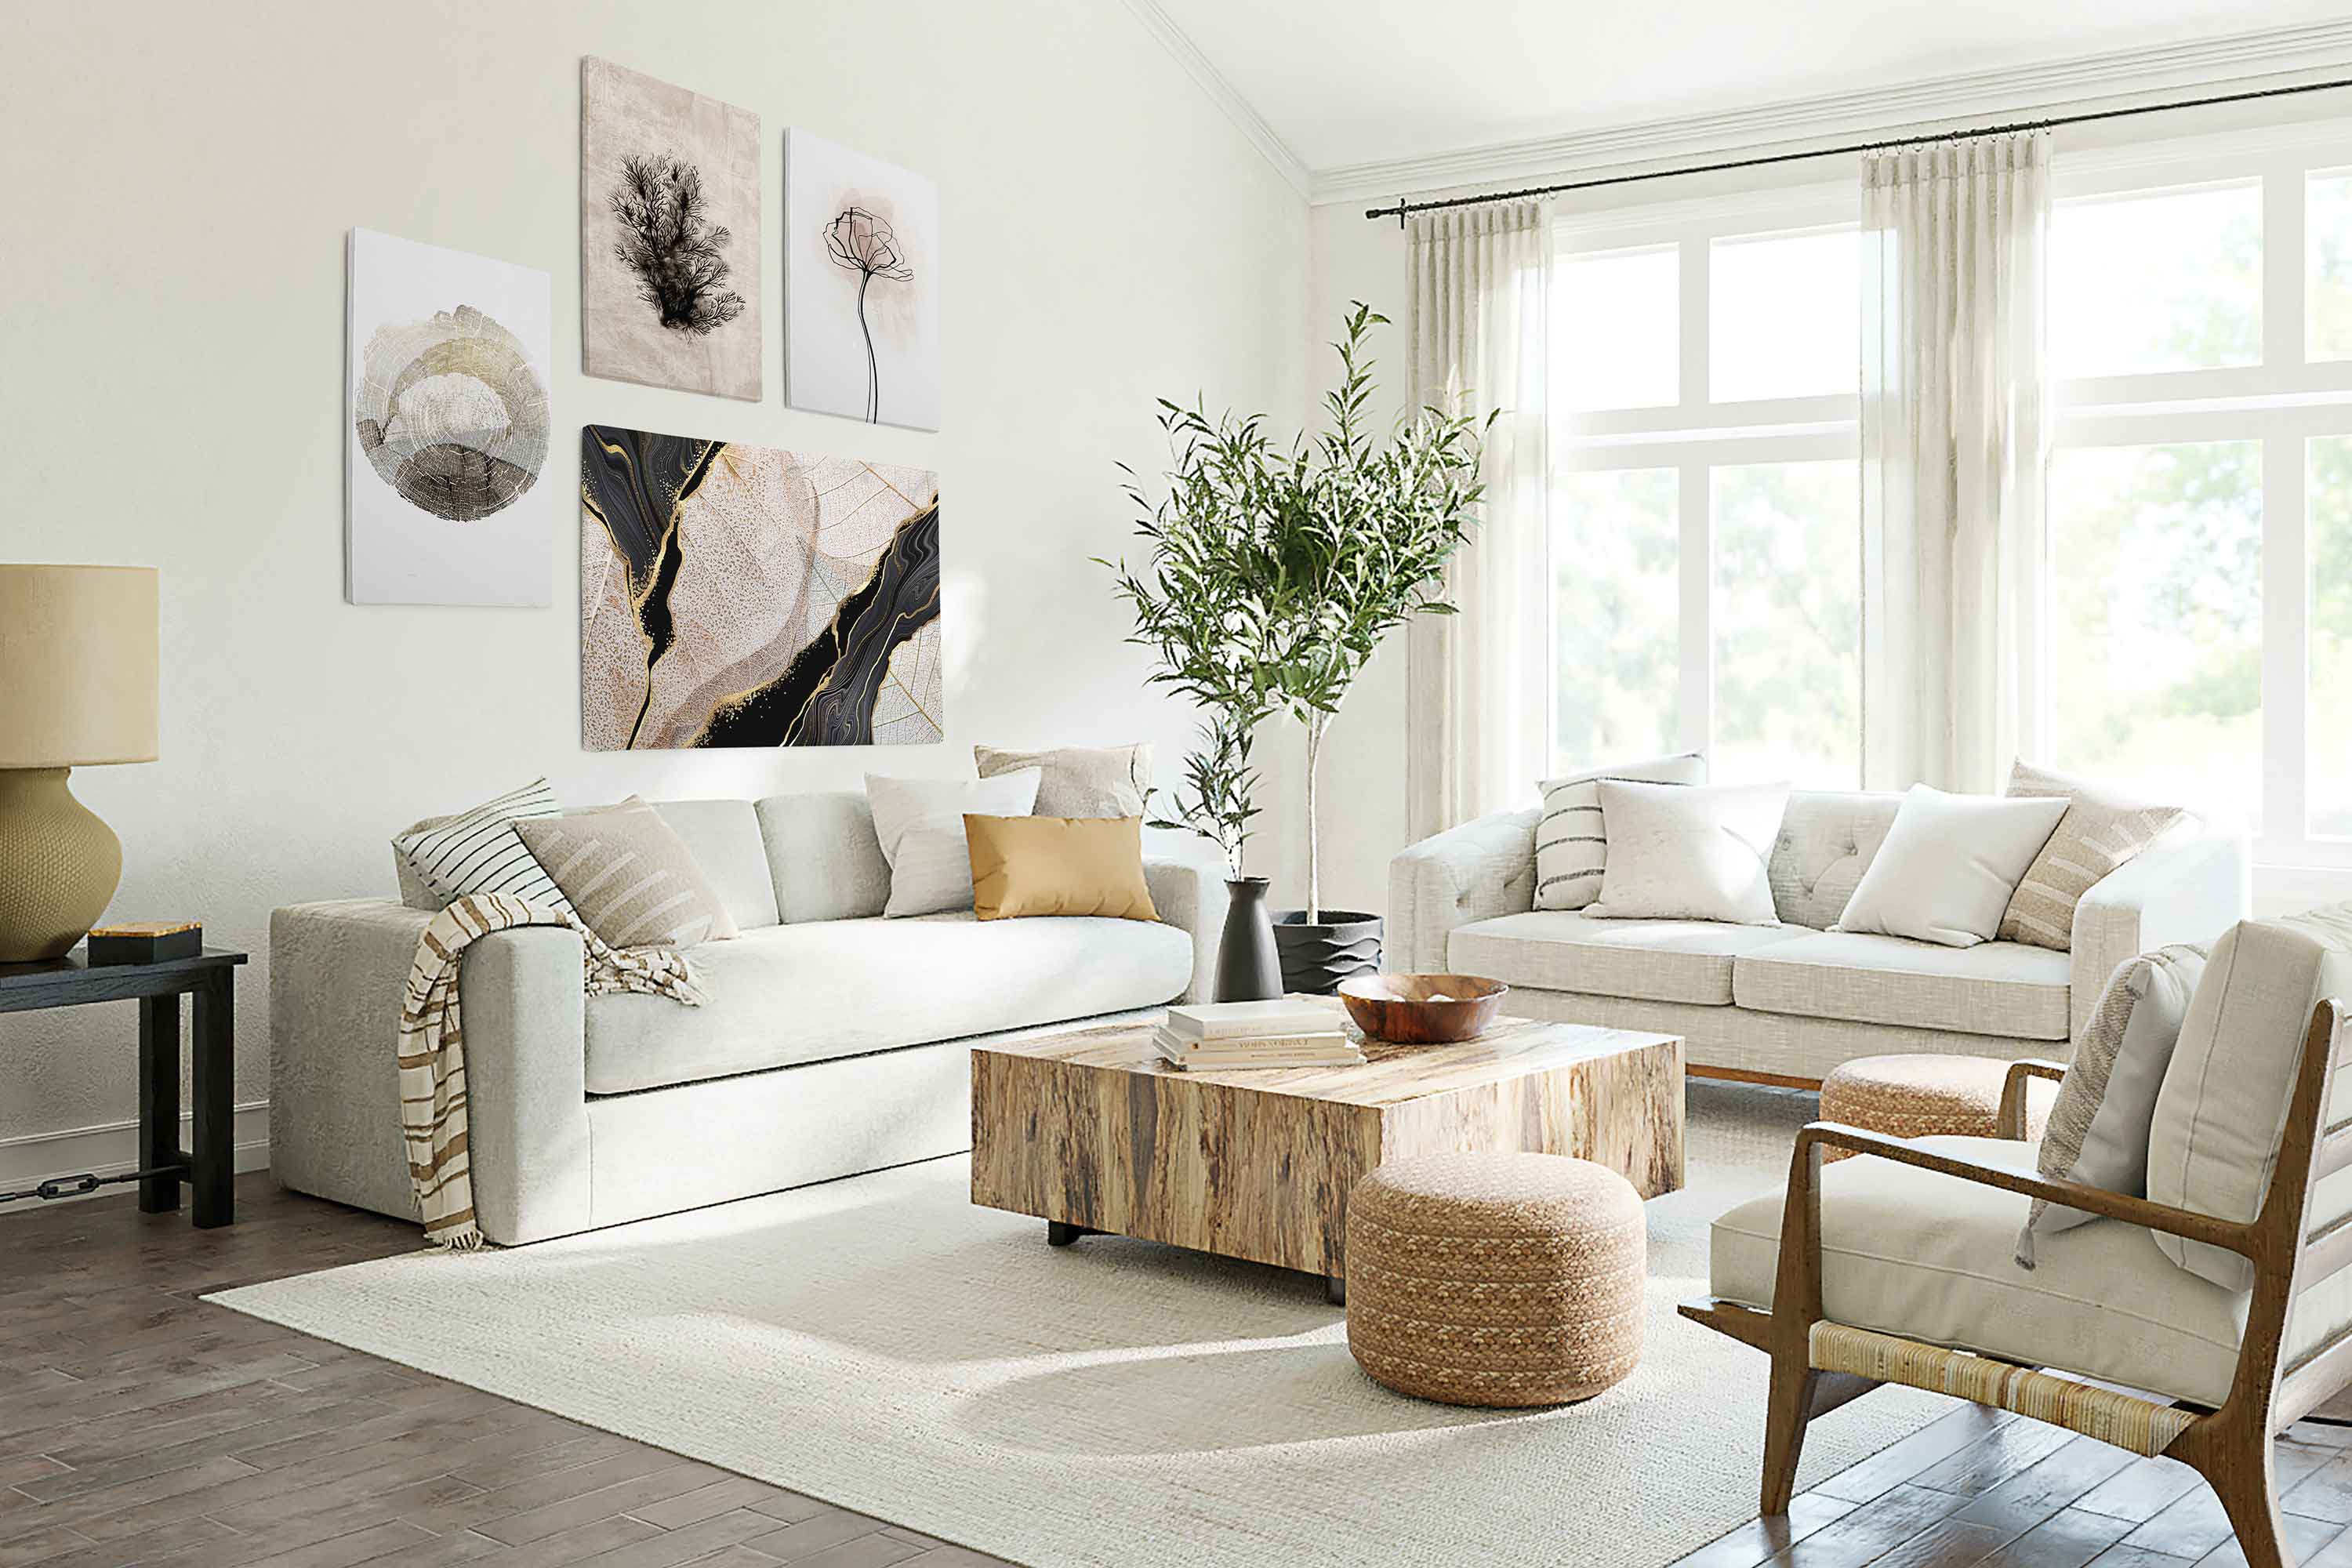 5 idées stylées pour décorer votre canapé avec des coussins